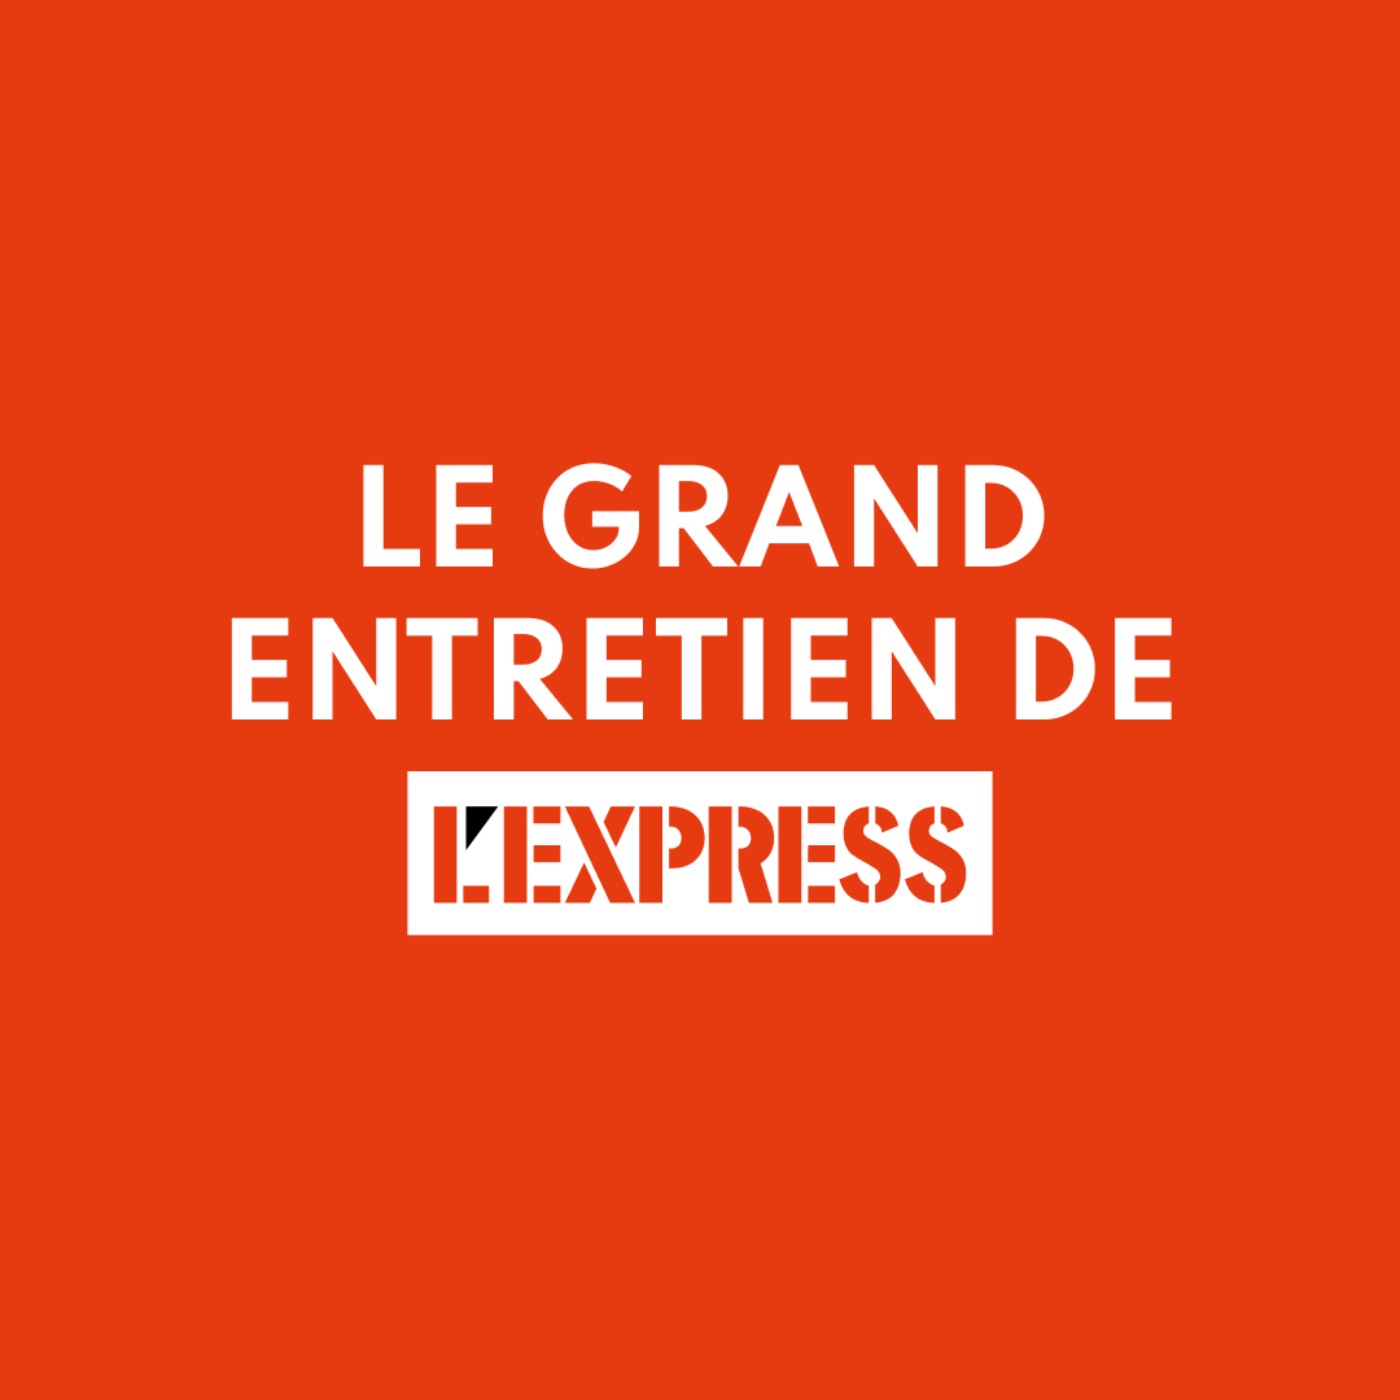 Le grand entretien de L’Express : Nicolas Baverez sur Raymond Aron